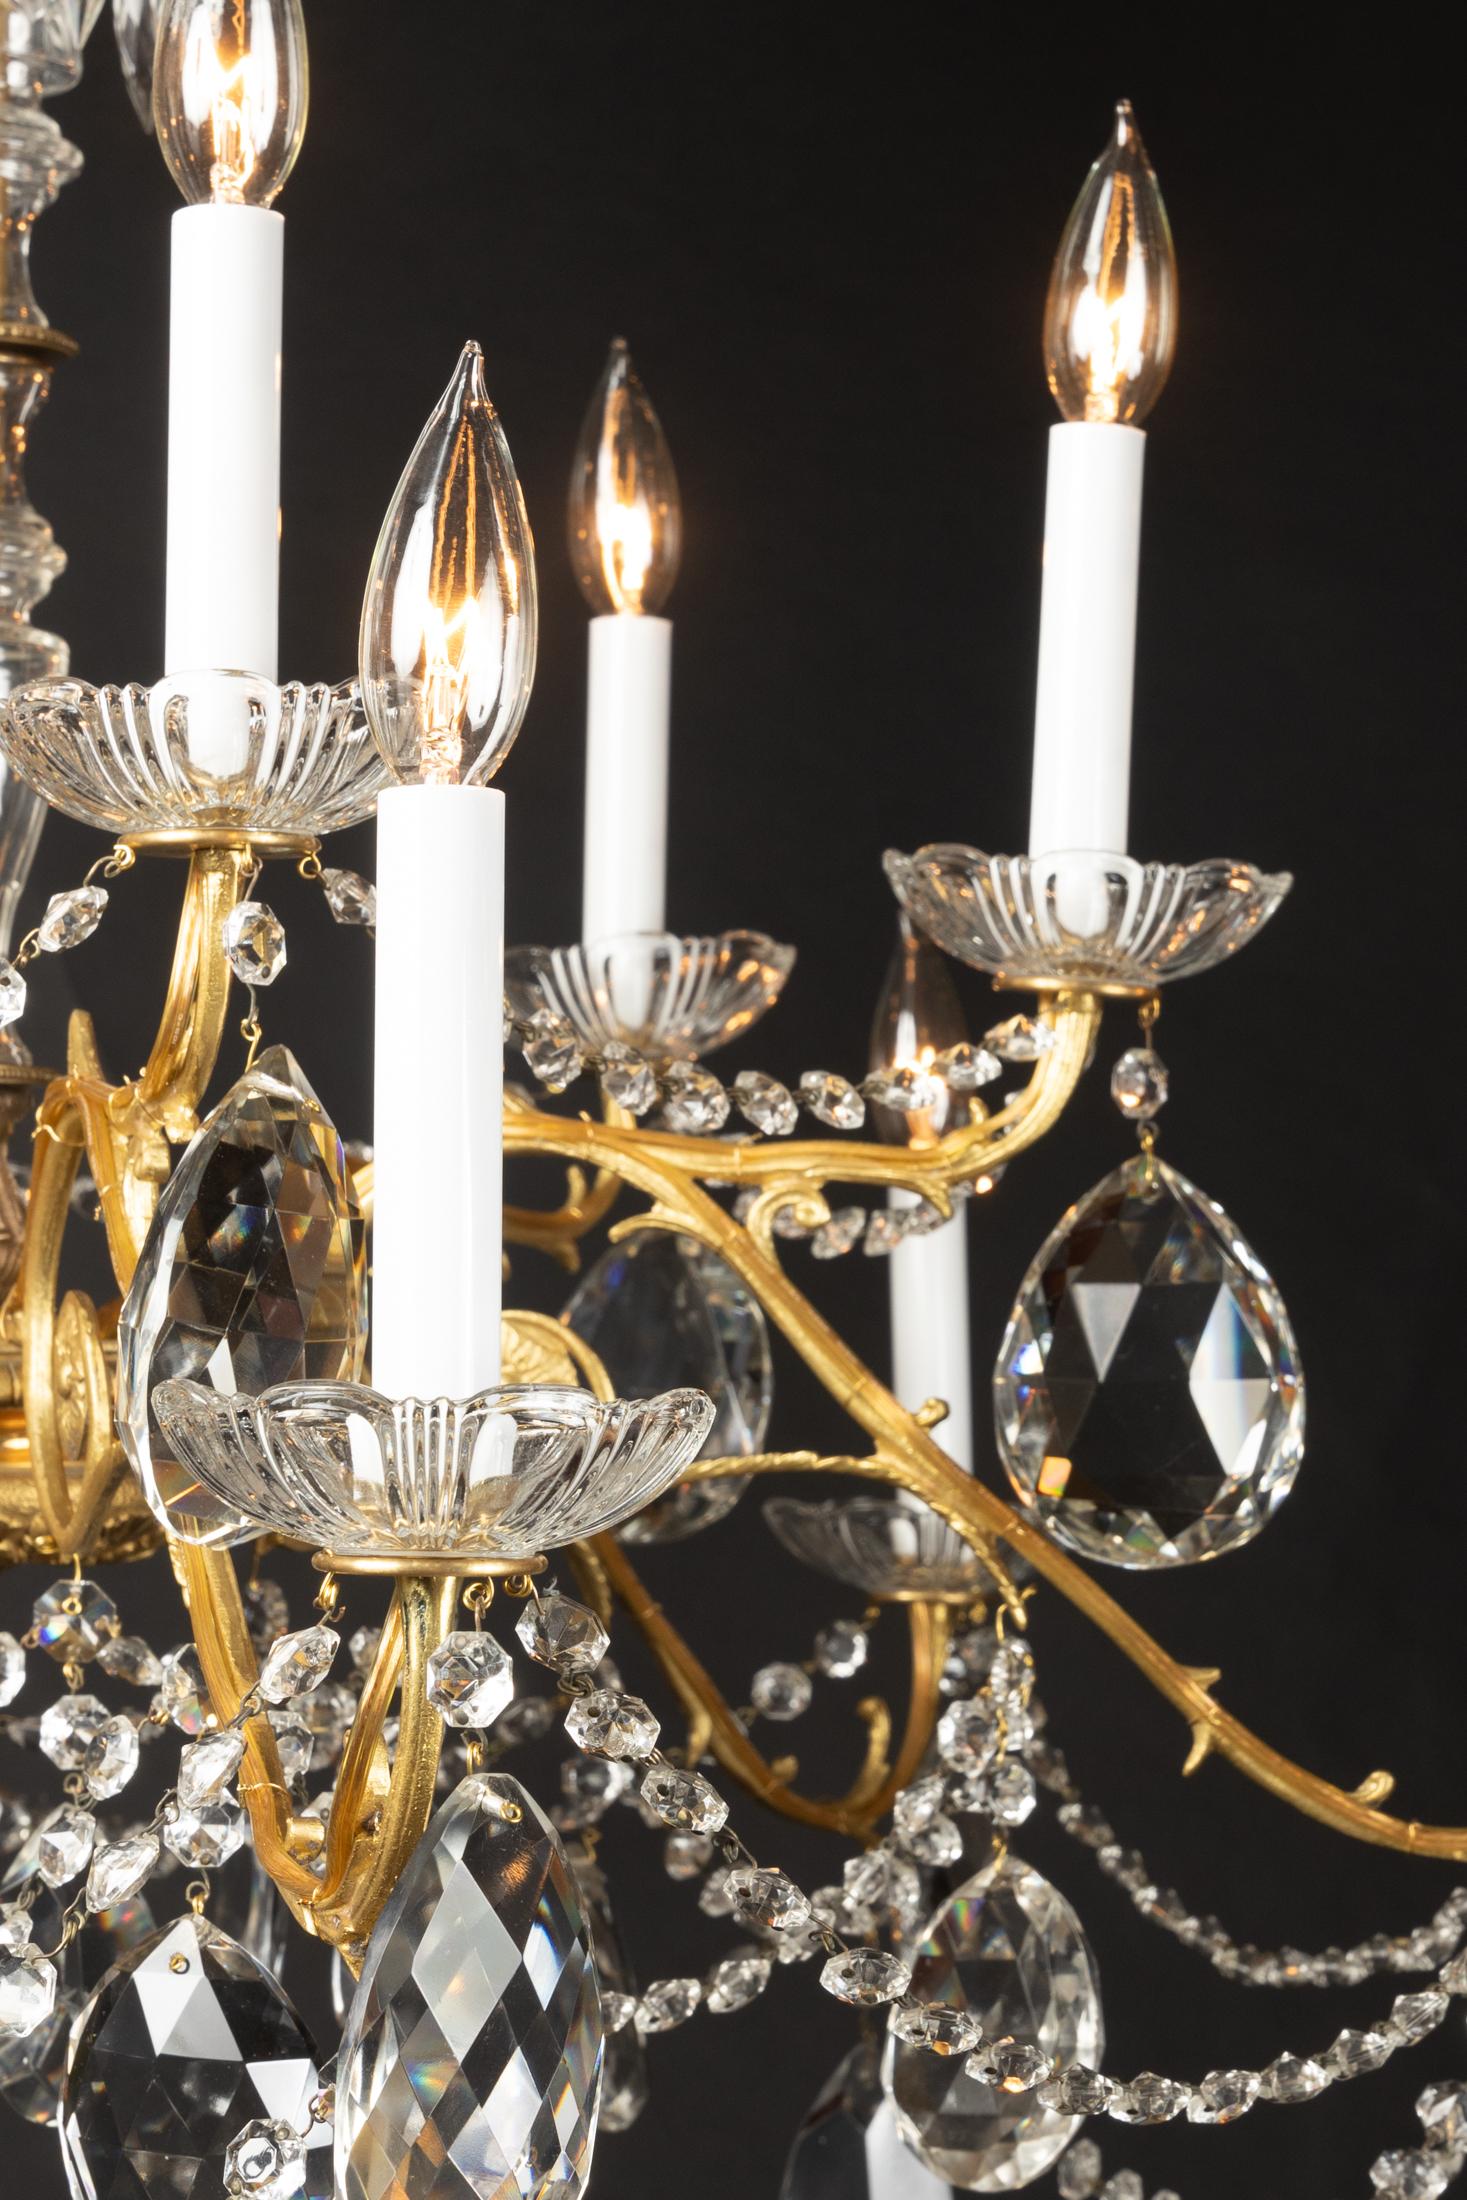 Dieser klassische Louis-XVI-Kronleuchter stammt aus dem 19. Jahrhundert und verfügt über wunderschönes Kristall, das den mittleren Schaft umgibt. Seile aus achteckigem Kristall fließen von den langen Bronzearmen und verleihen dem Kronleuchter einen